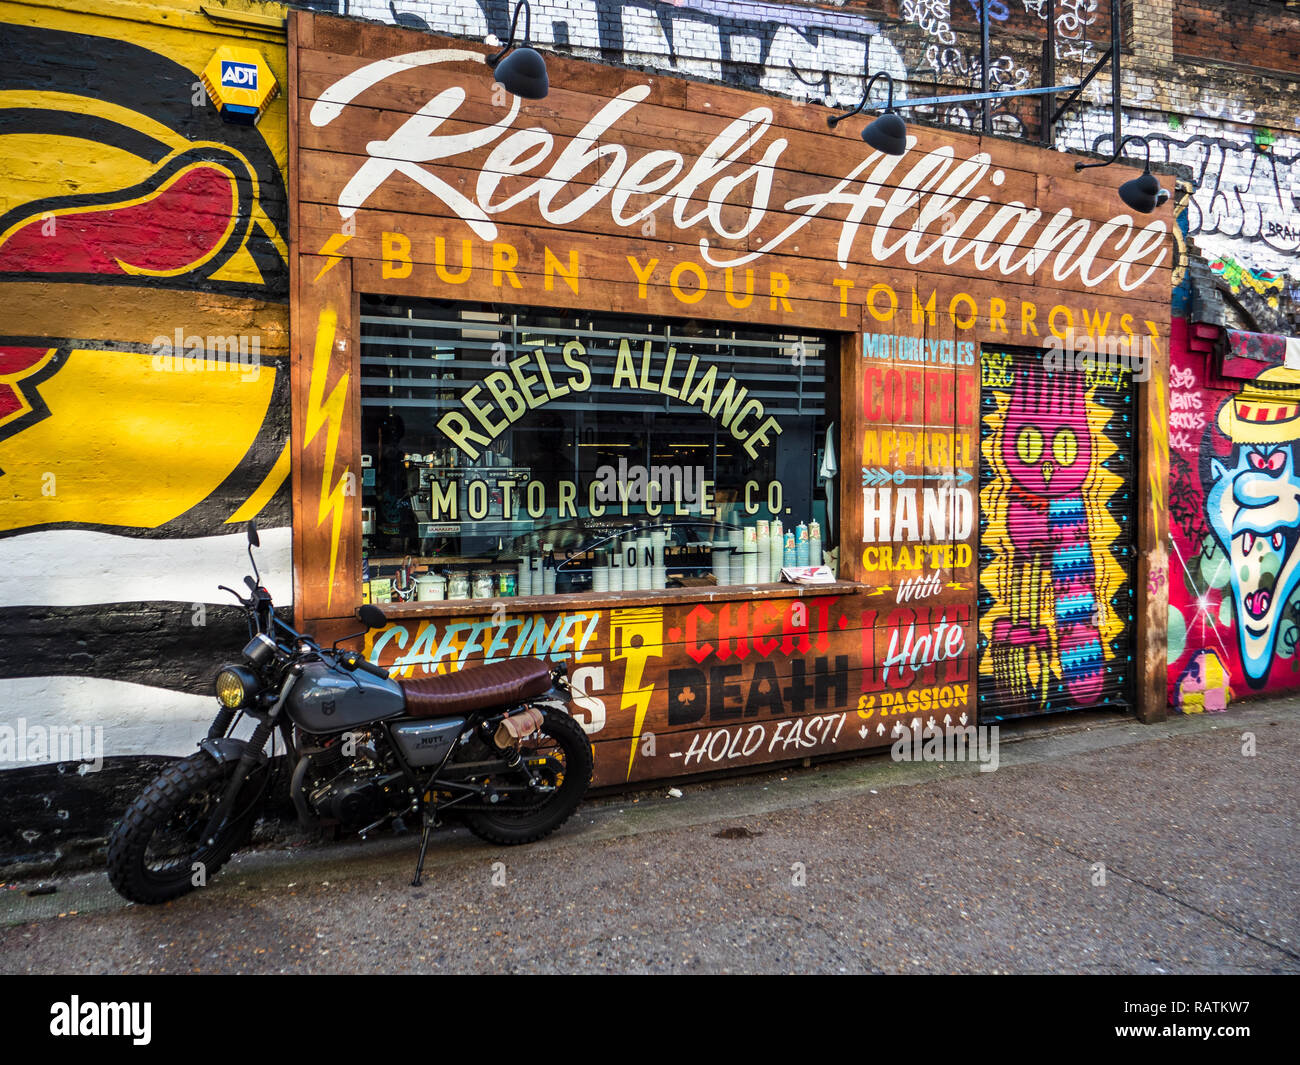 Rebels Alliance Motorcycle Co, Kleidung und Café-Bar in Shoreditch East London in der Nähe der Brick Lane. Speziell angefertigte Motorräder. Stockfoto